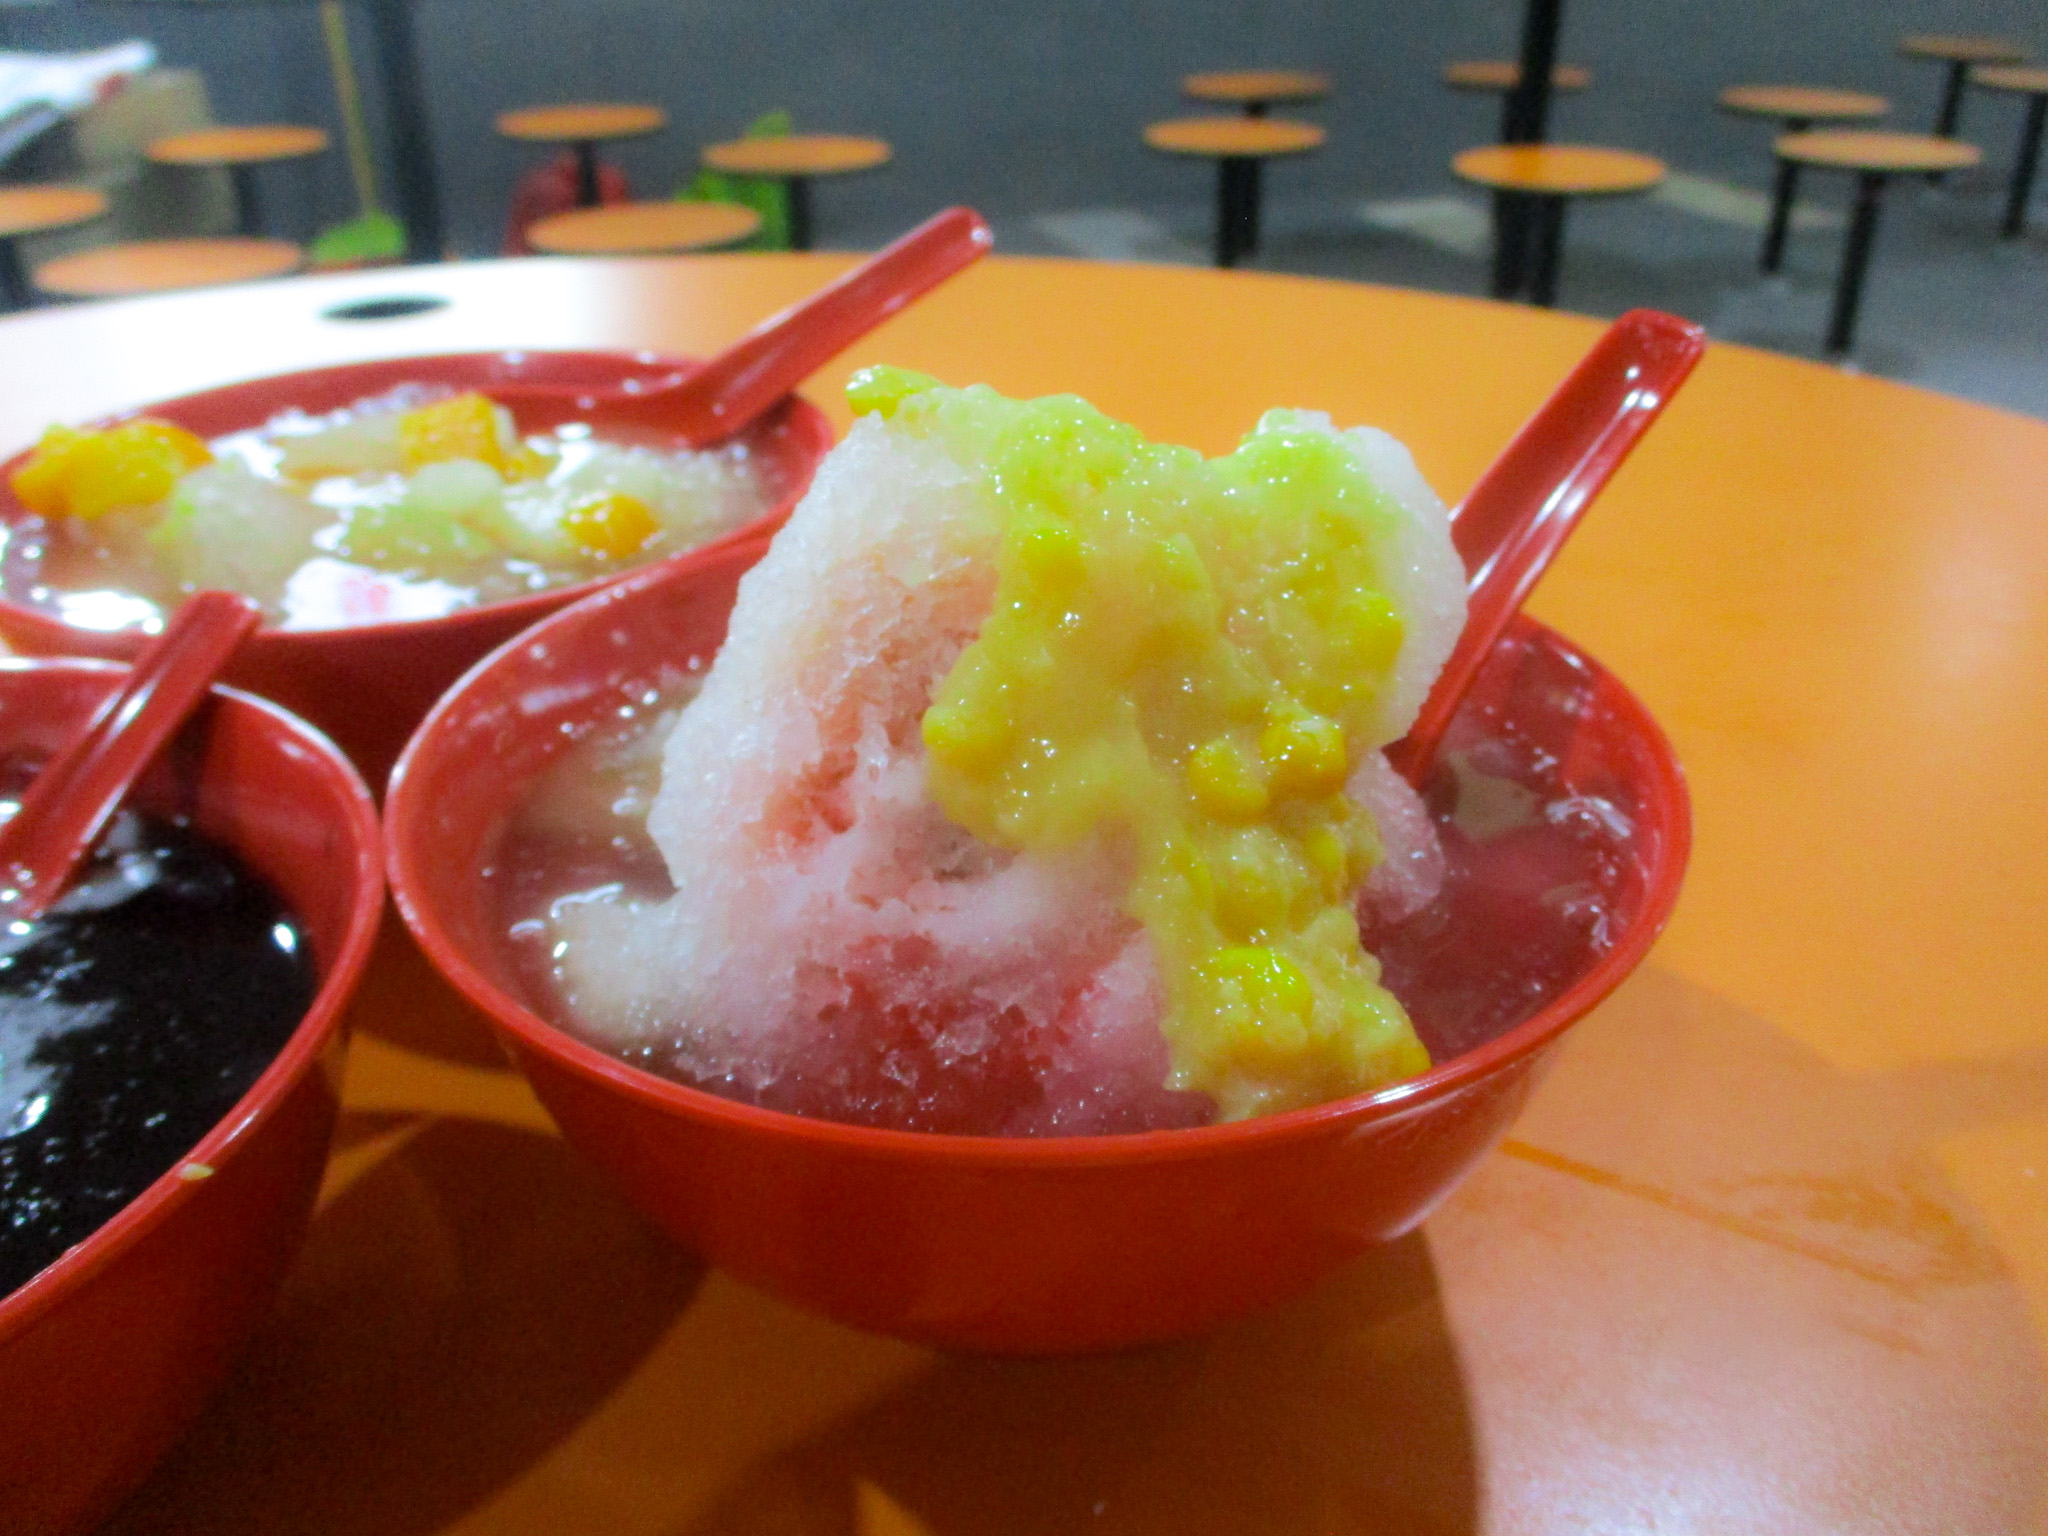 Pui Pui Heng Hot & Cold Dessert: Ice Kacang